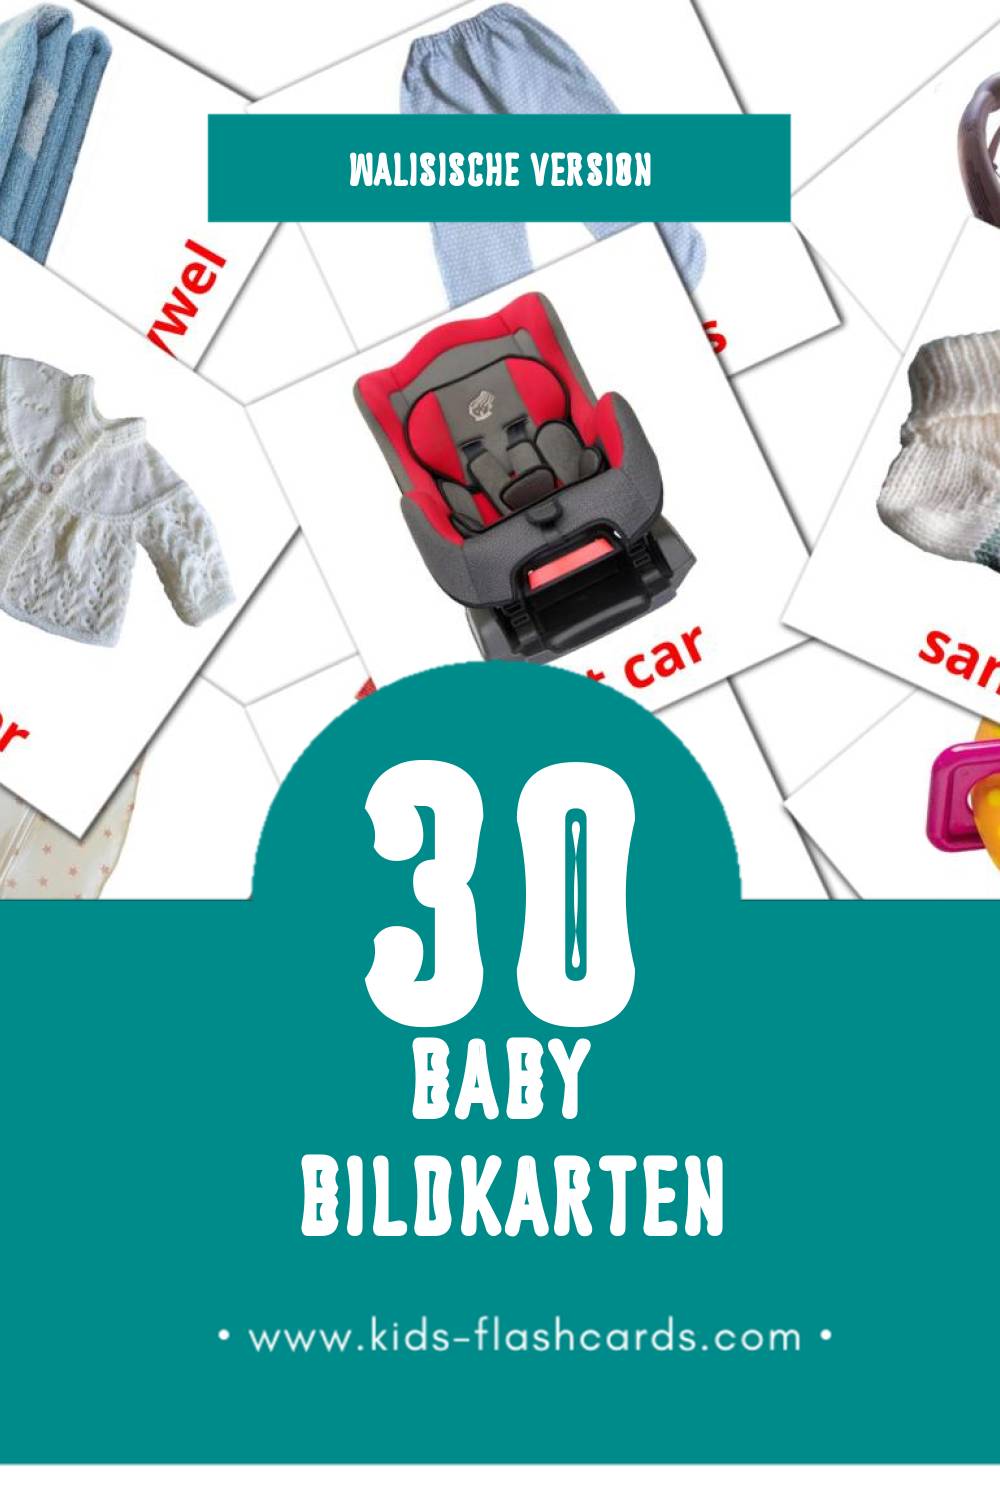 Visual Babi Flashcards für Kleinkinder (30 Karten in Walisisch)